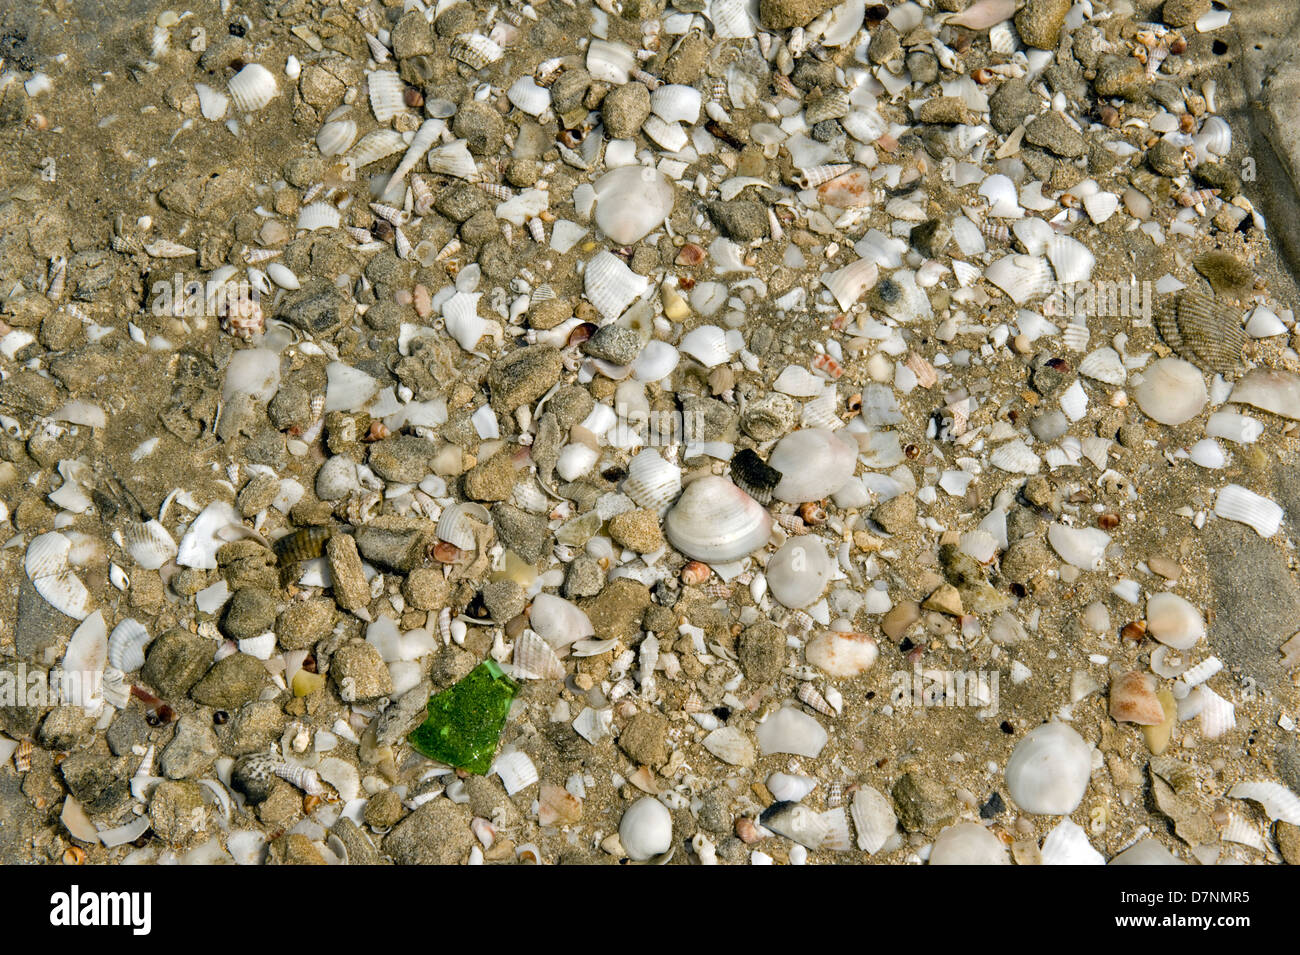 Strand mit einer größeren Anzahl von kleinen Muscheln, Abu Dhabi, Vereinigte Arabische Emirate Stockfoto